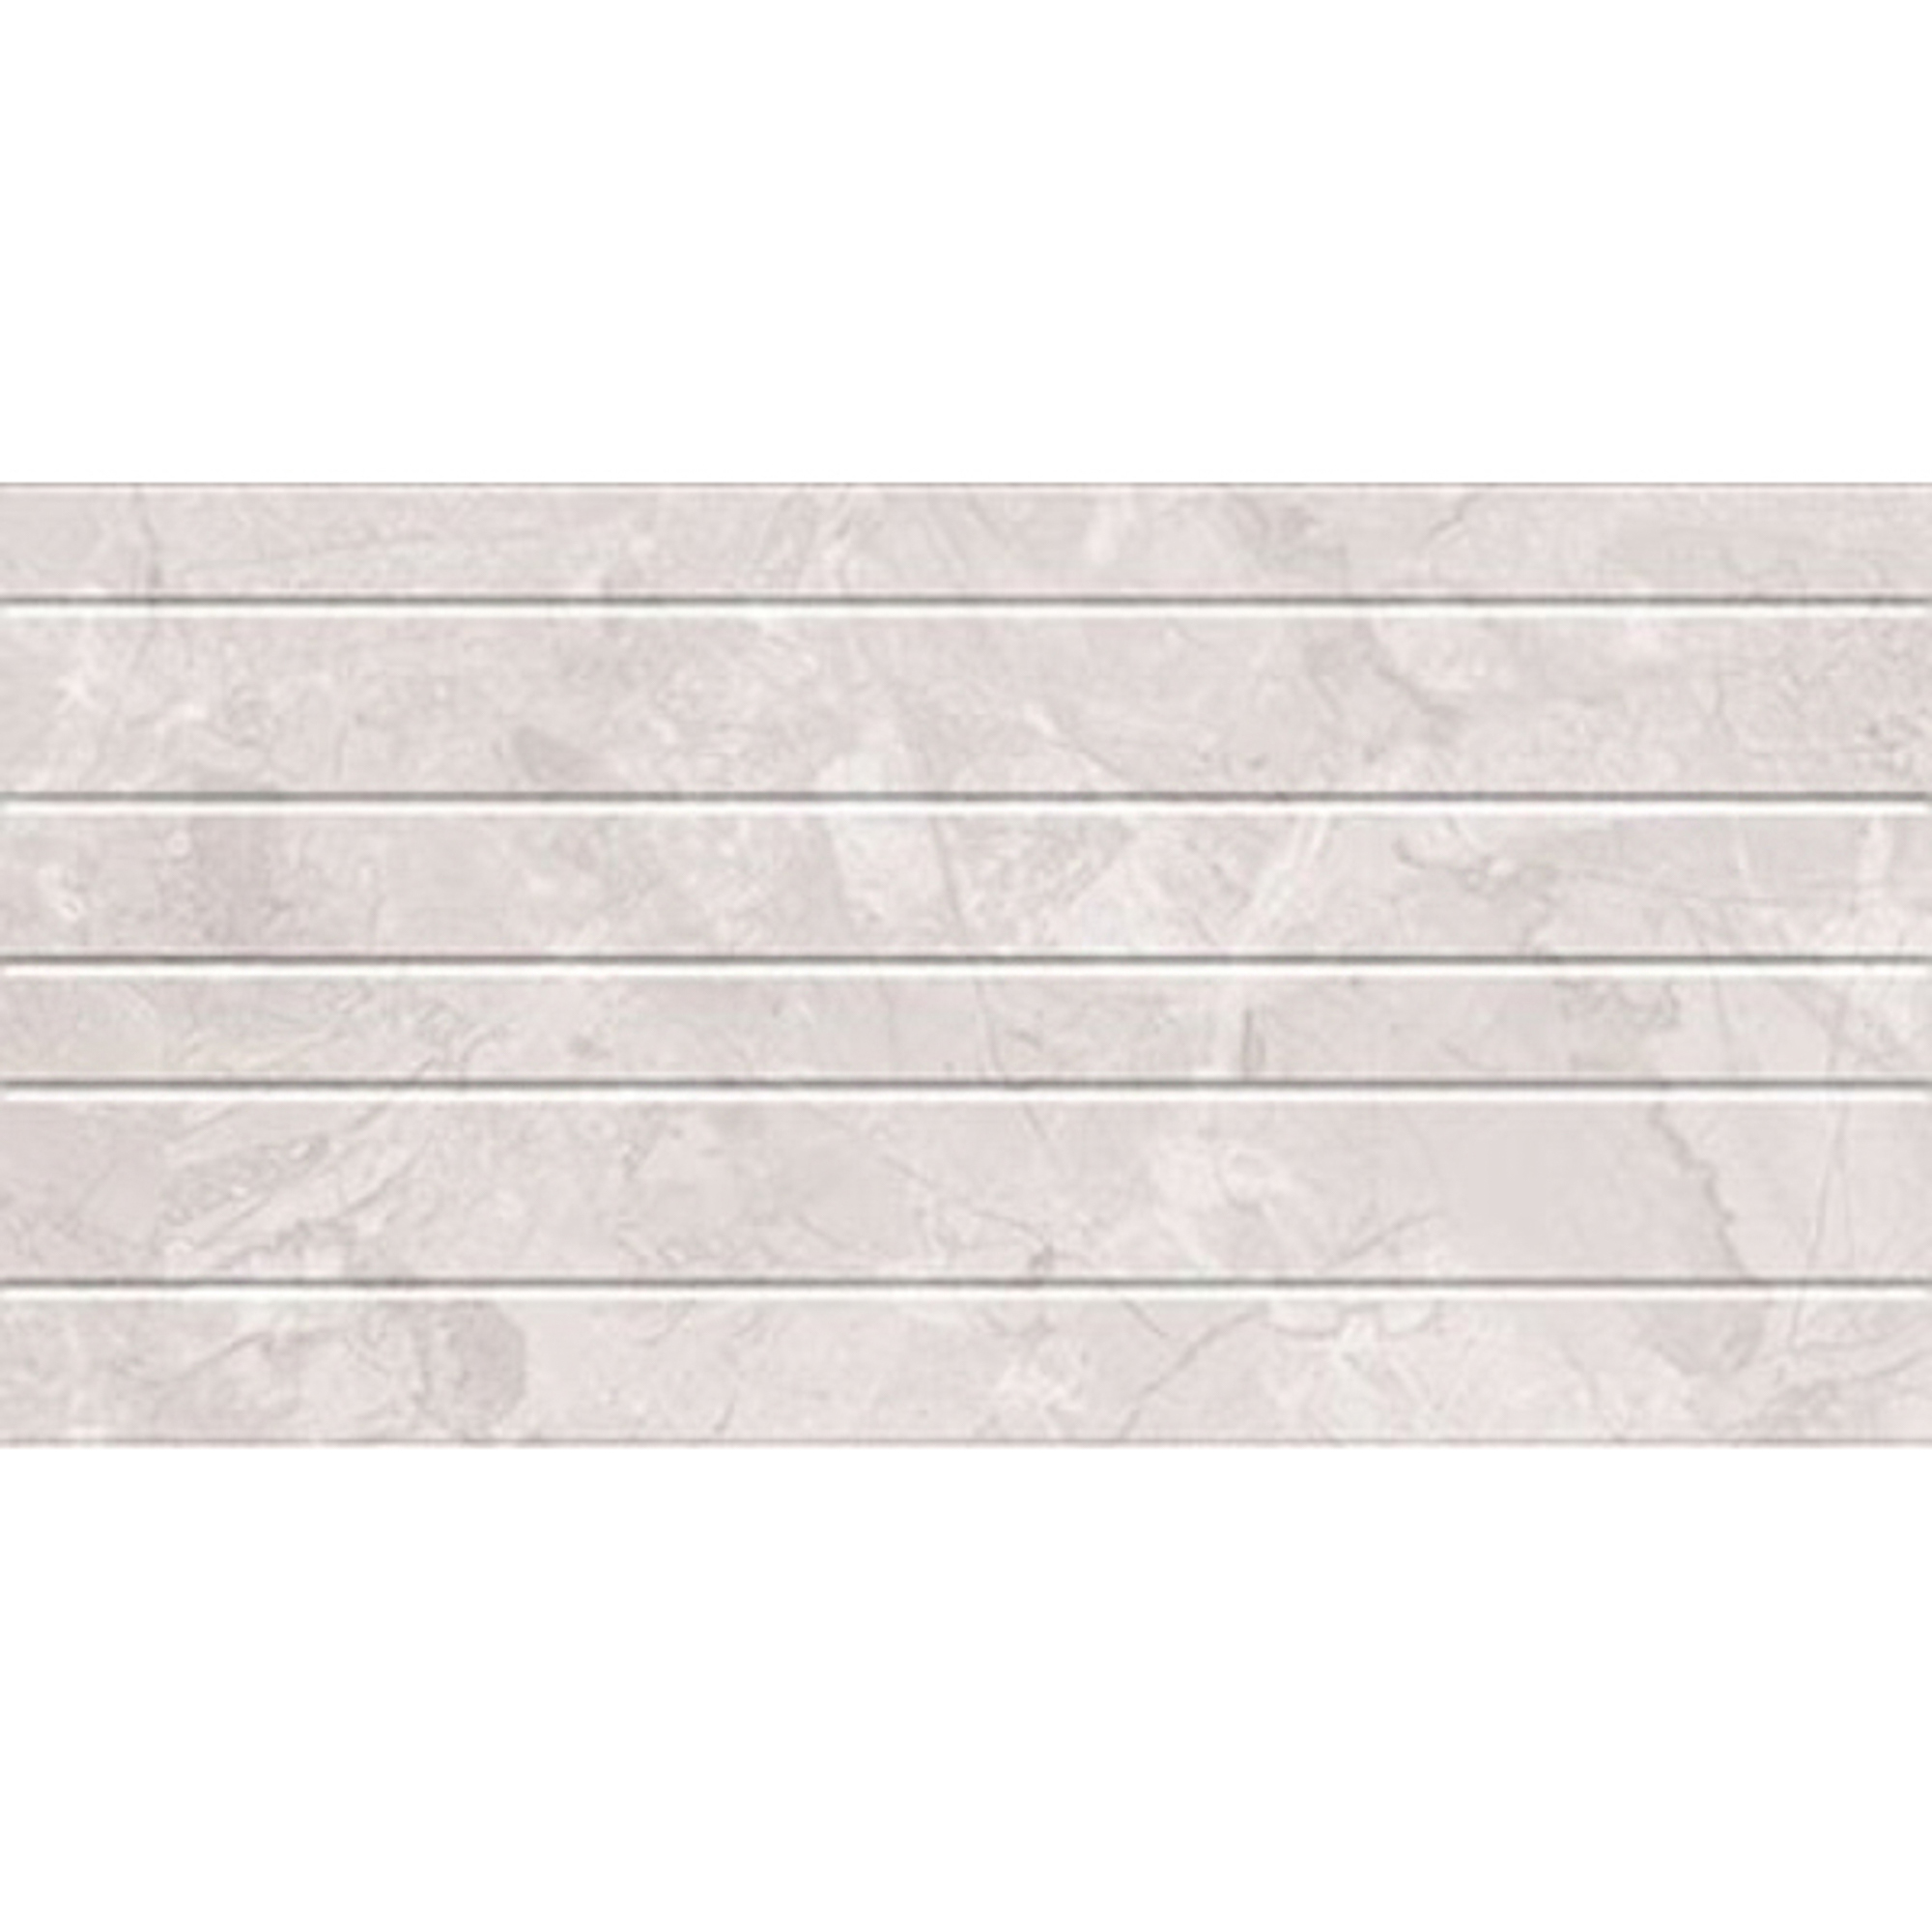 Плитка Kerlife Delicato Linea Perla 31,5x63 см плитка kerlife delicato linea perla 31 5x63 см